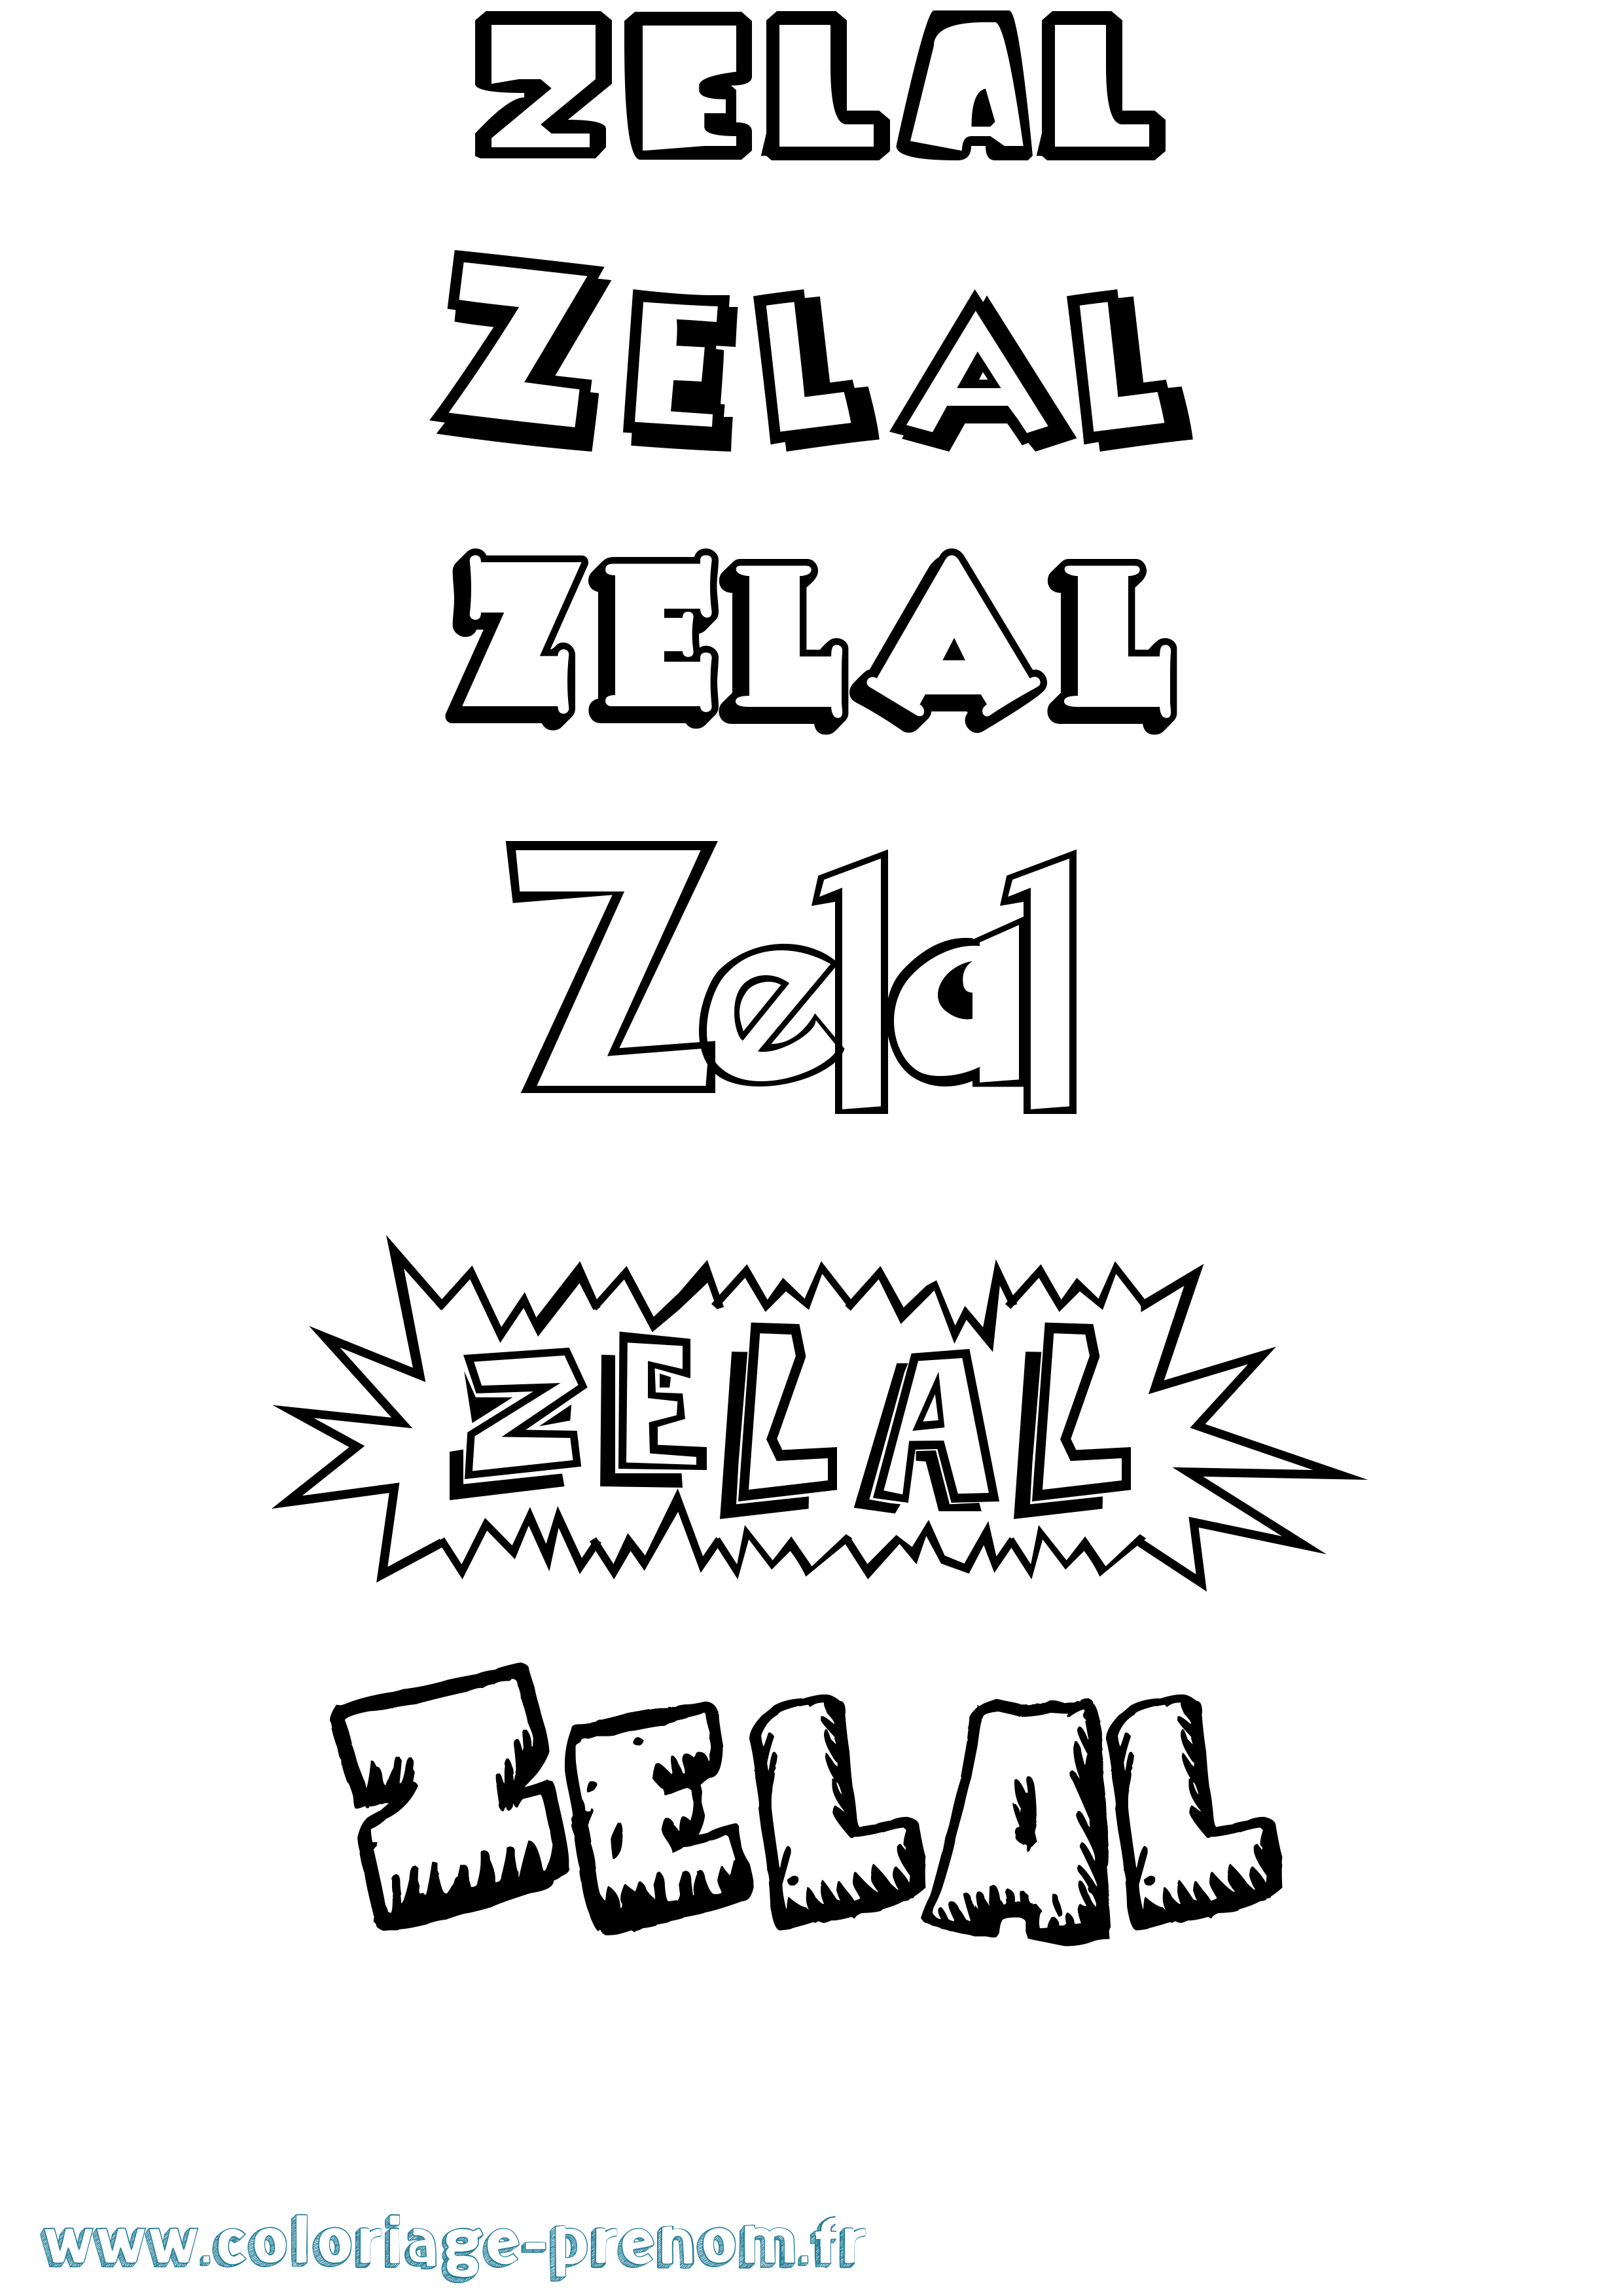 Coloriage prénom Zelal Dessin Animé